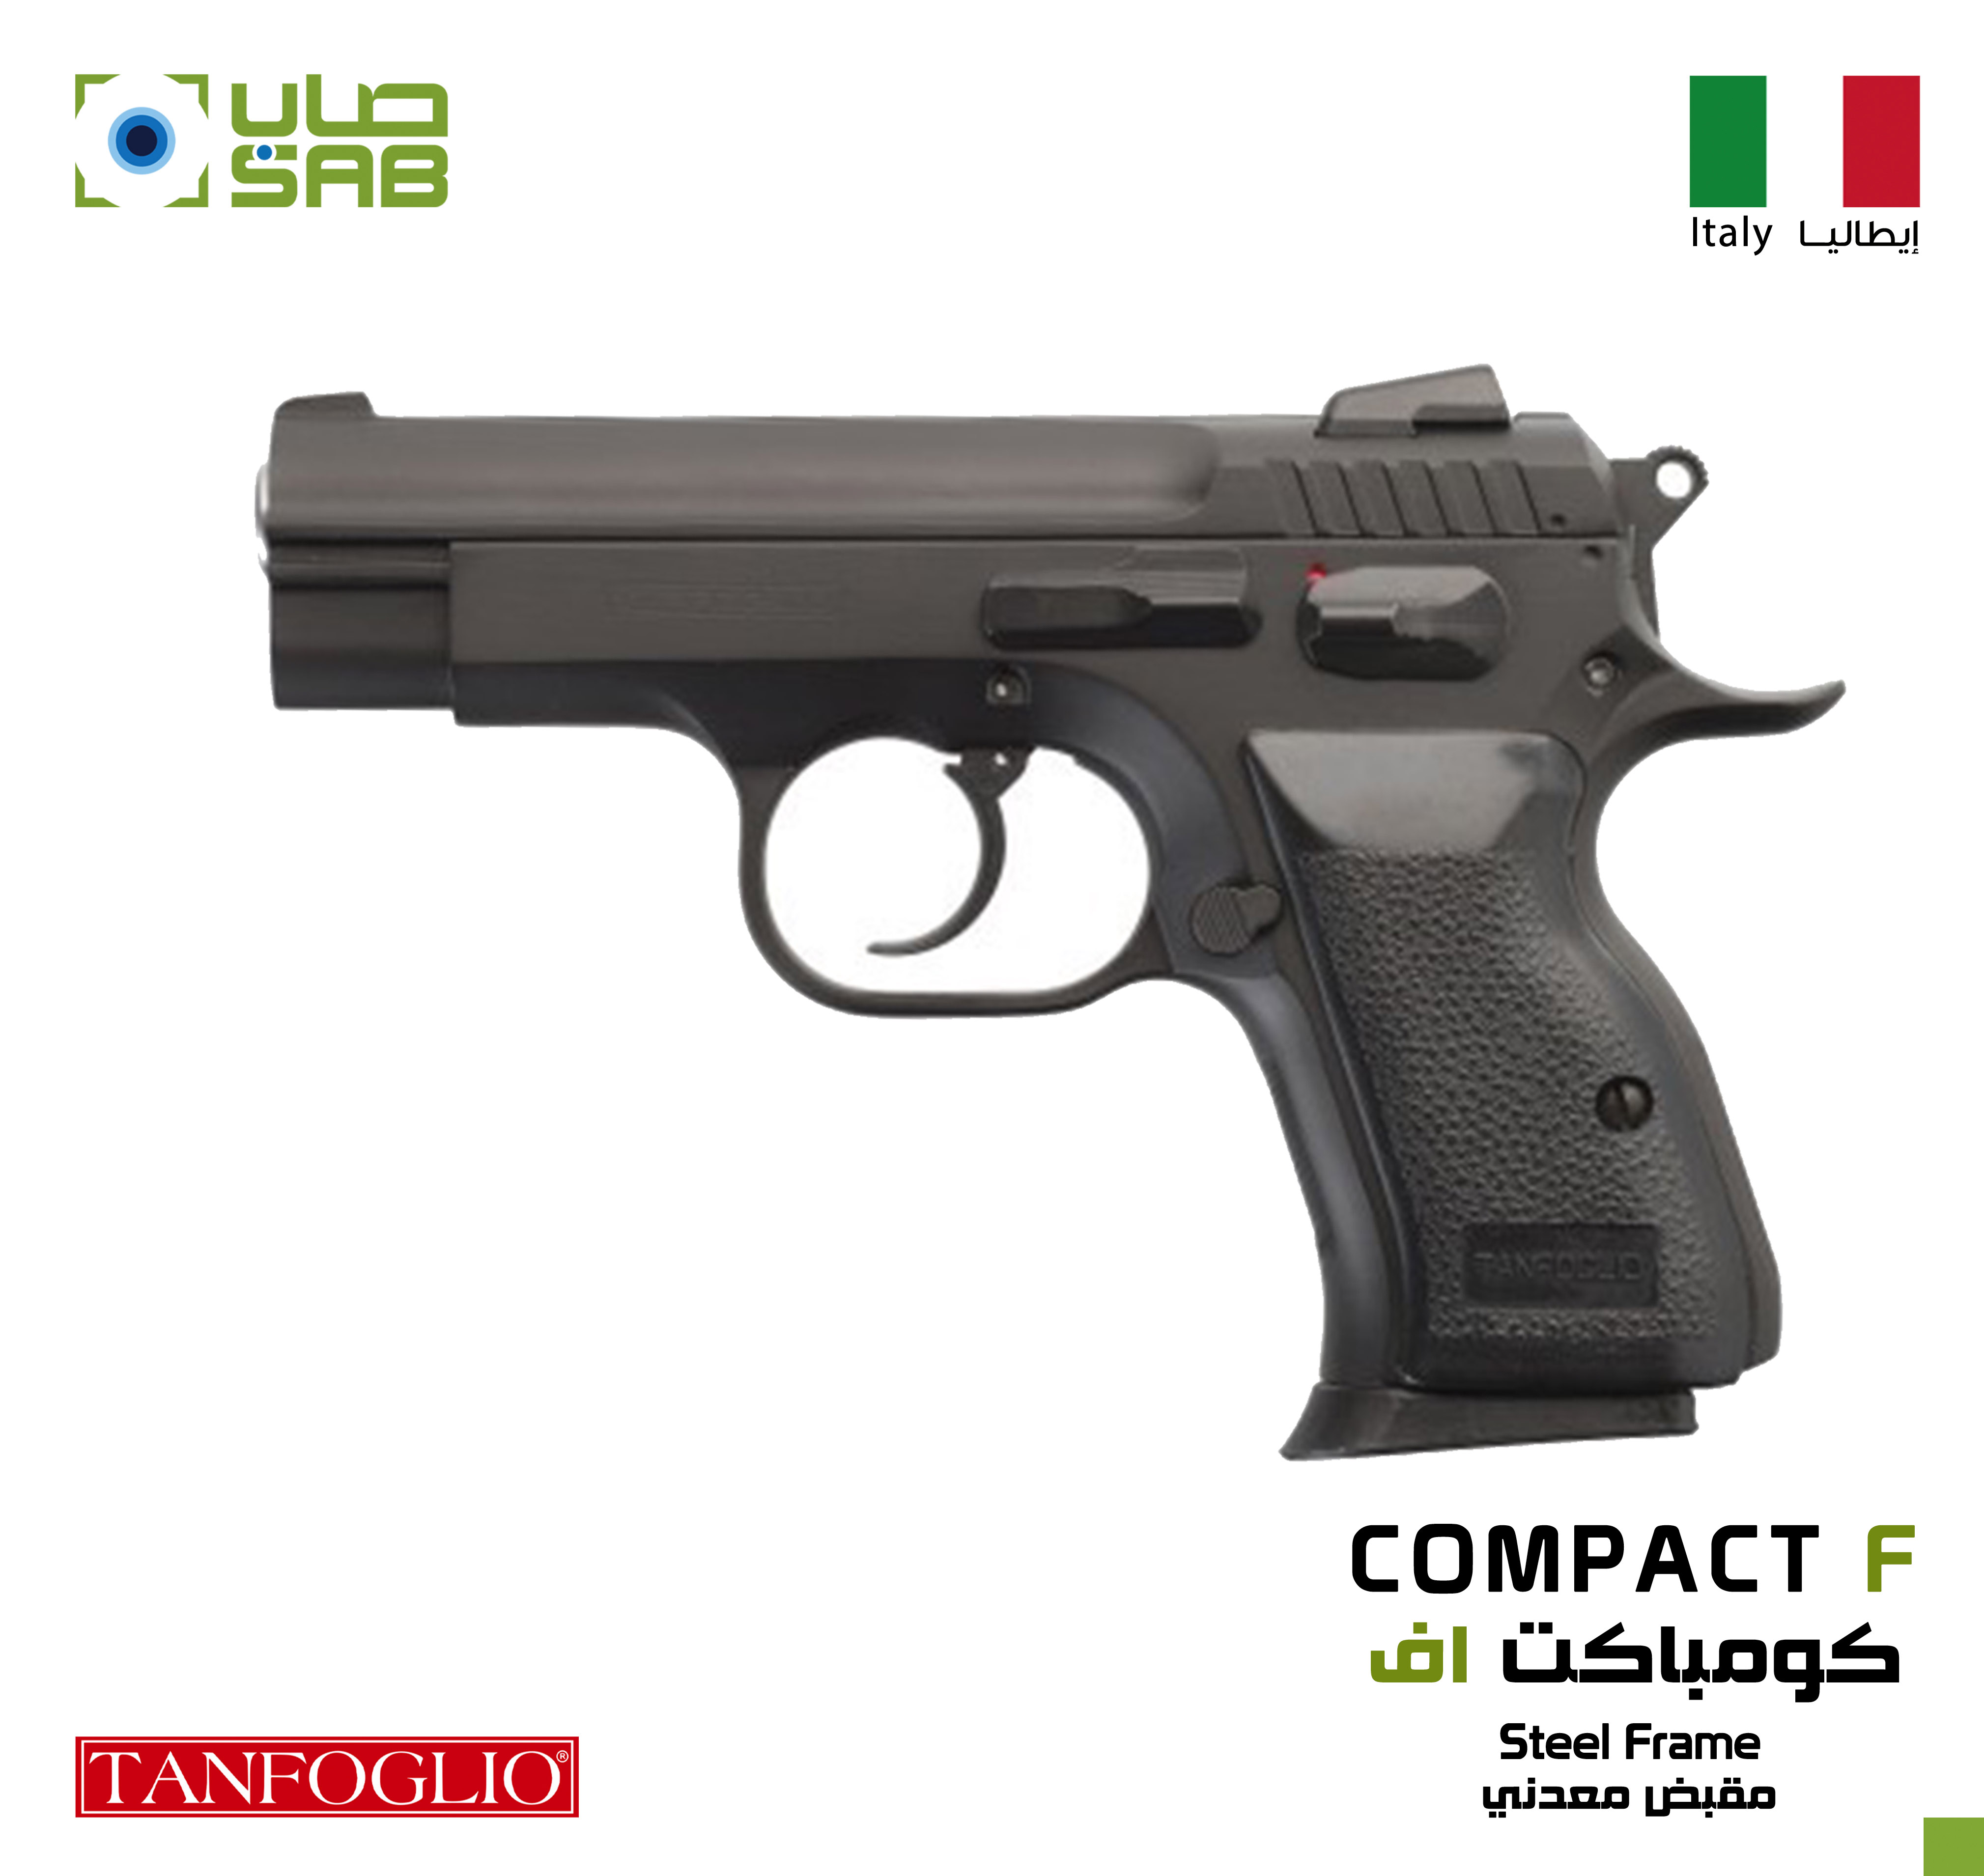  9mm - Tanfoglio - COMPACT F